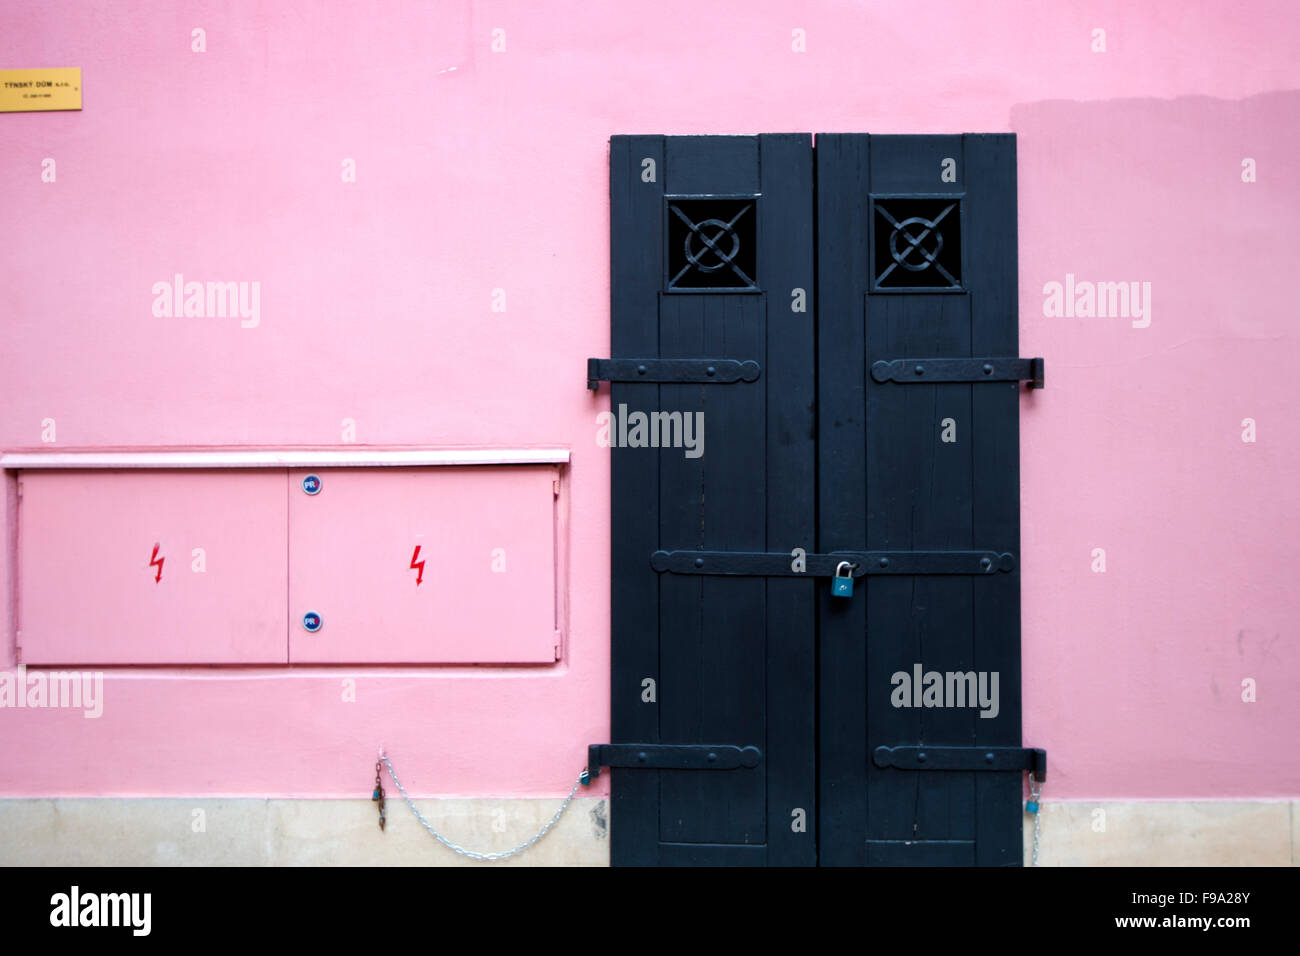 Un mur rose avec un cadenas porte noire Banque D'Images